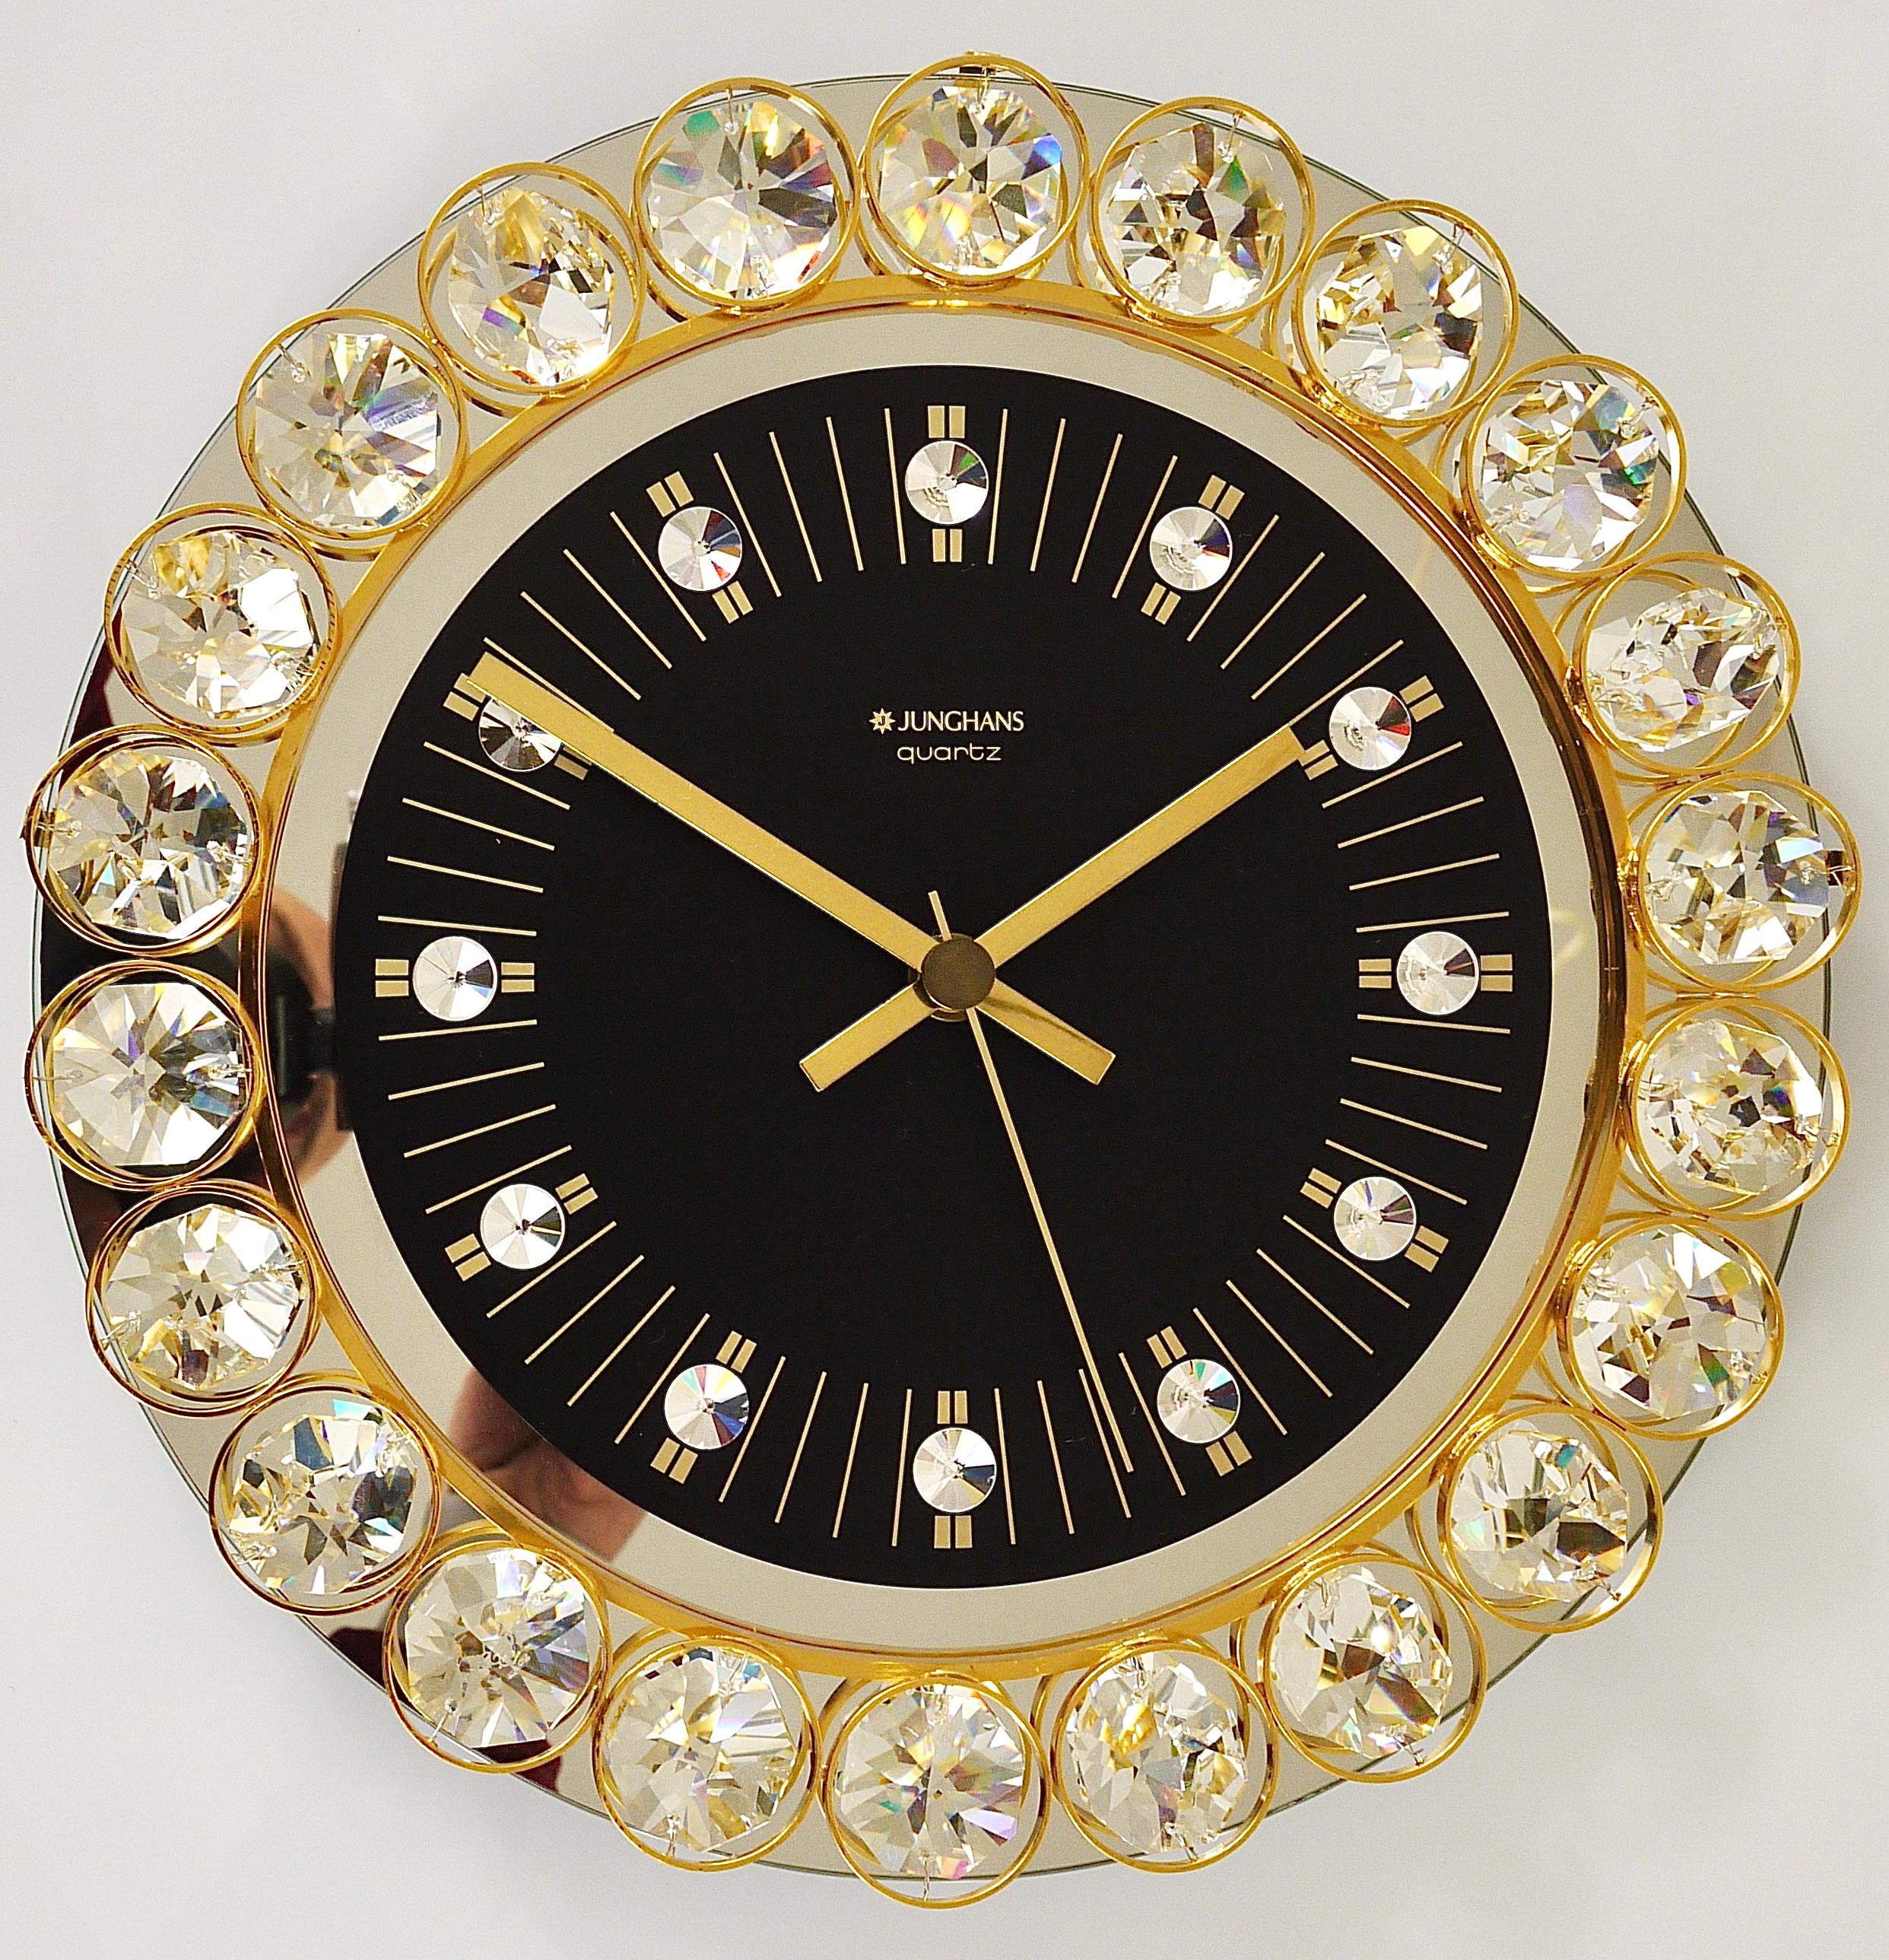 Une belle horloge murale ronde, exécutée dans les années 1970 par Junghans, Allemagne, dans le style de Gaetano Sciolari ou Palwa. La face de l'horloge est en verre miroir avec un cadran noir et de beaux index en cristal. Le cadre est en métal doré